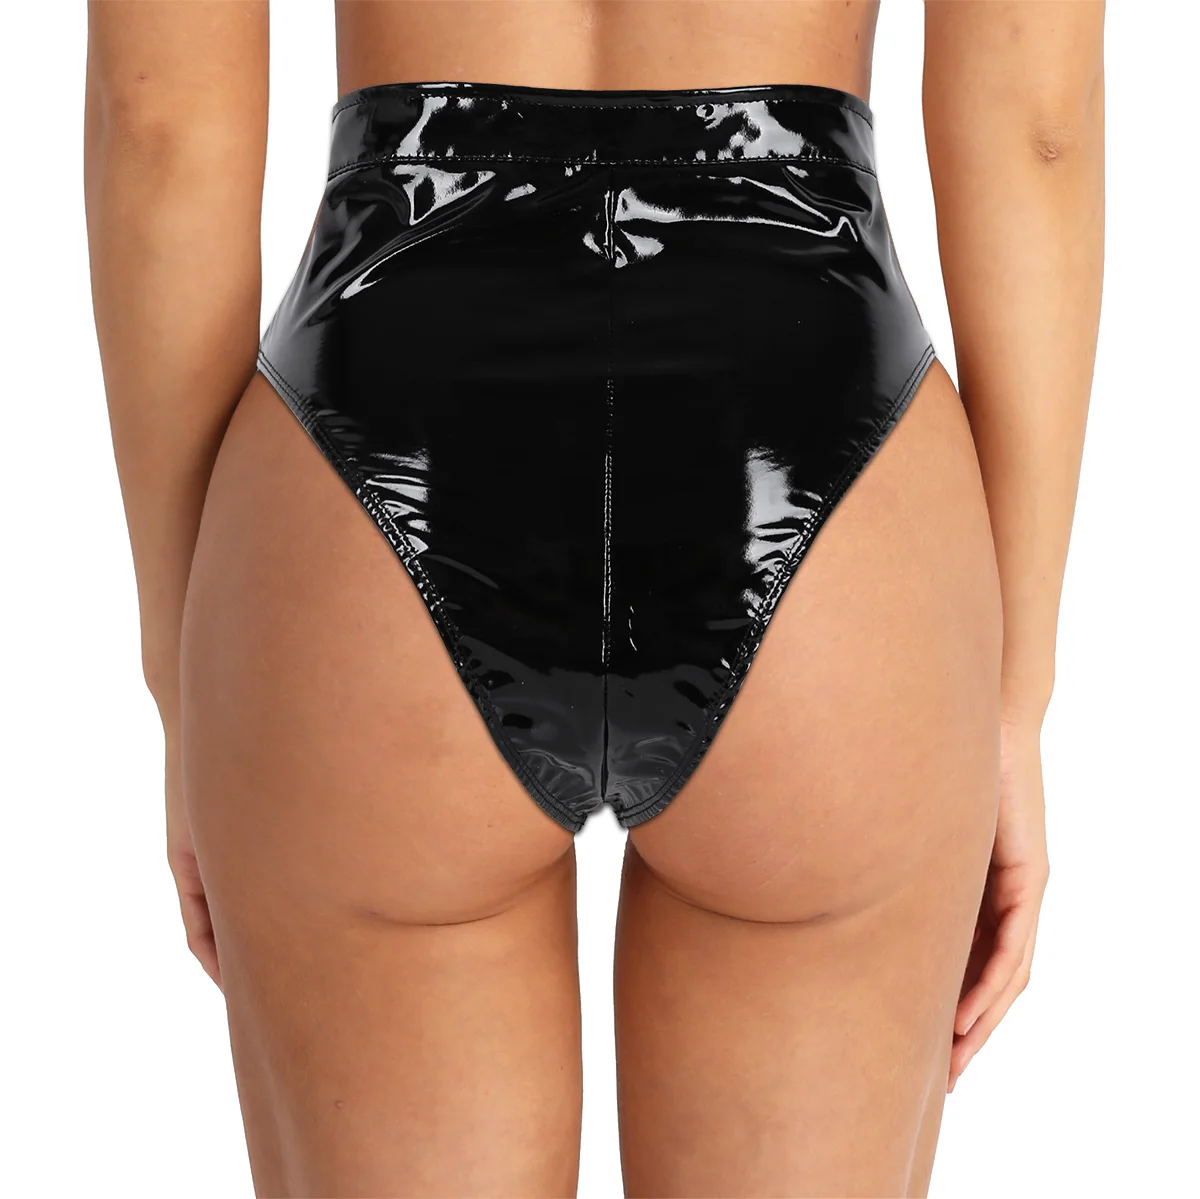 PVC Black Front Zipper Briefs Wet Look Thong Underwear High Waist Ships From USA